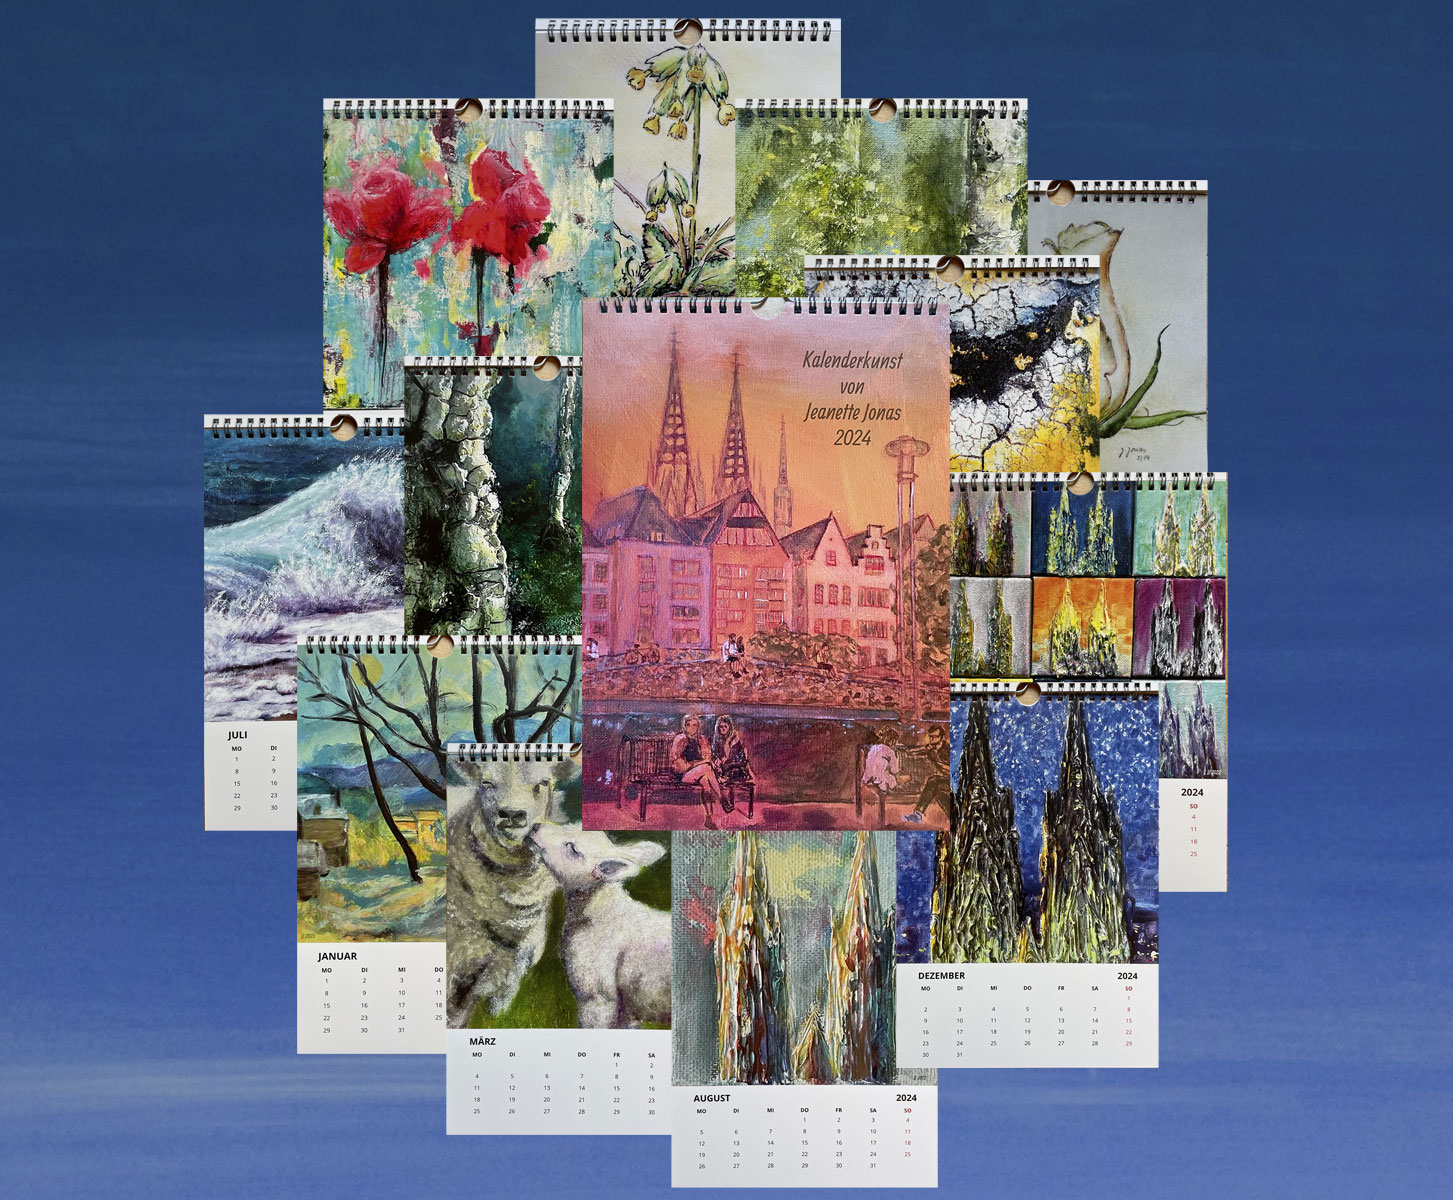 Kalender 2024 - art of jeanette jonas